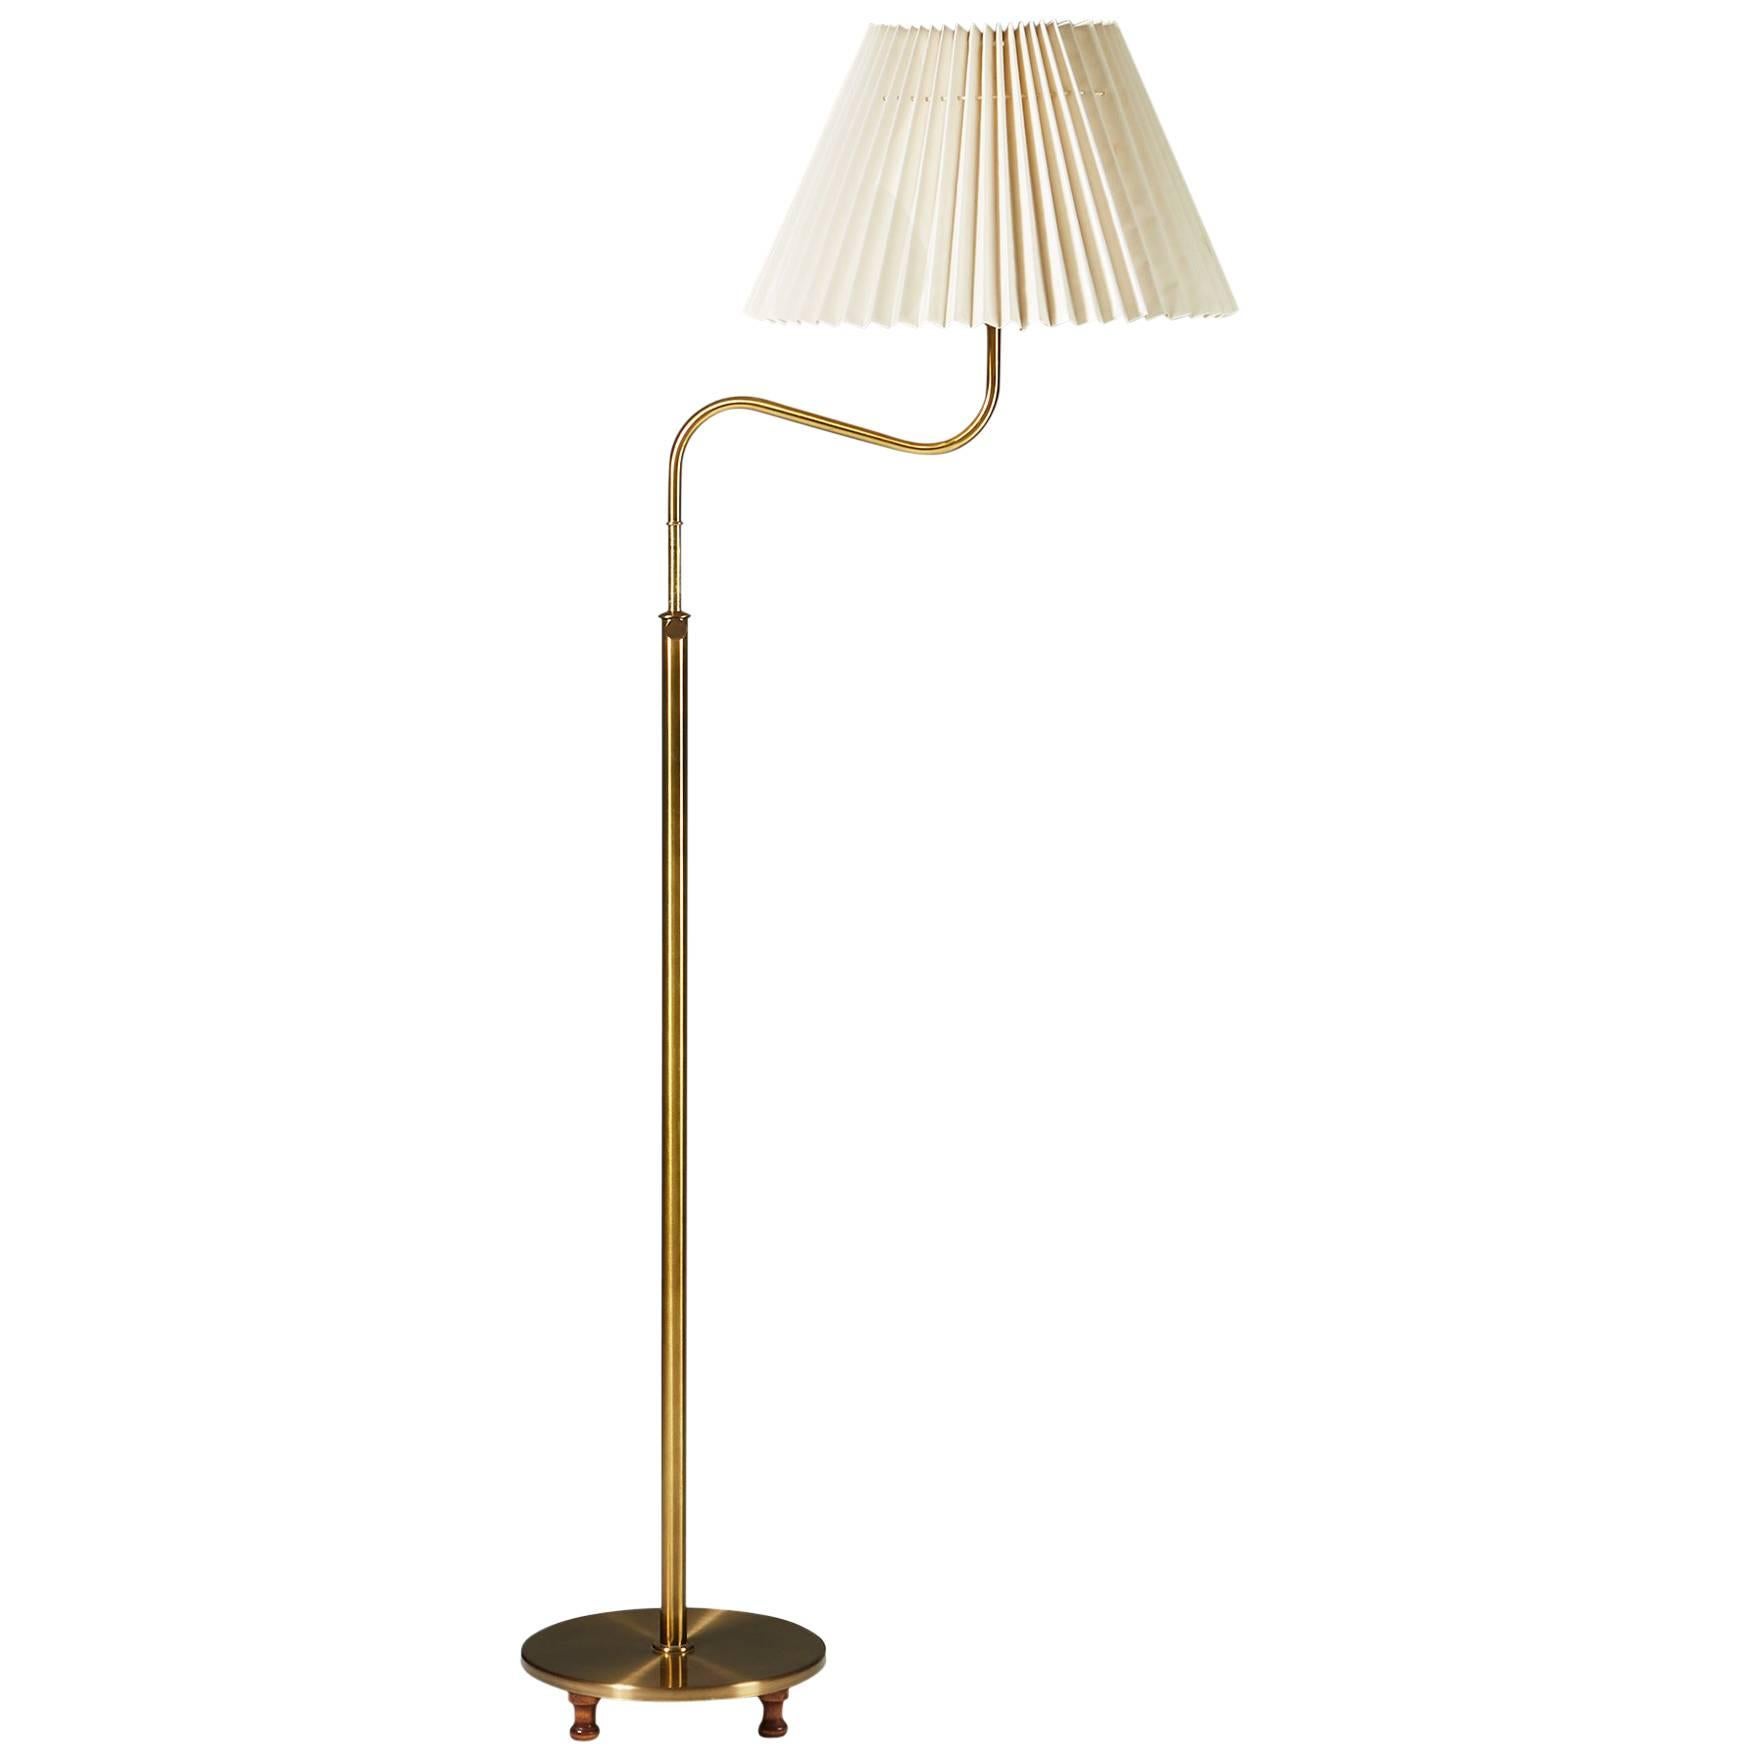 Floor Lamp Model 2568 Designed by Josef Frank for Svenskt Tenn, Sweden, 1939 